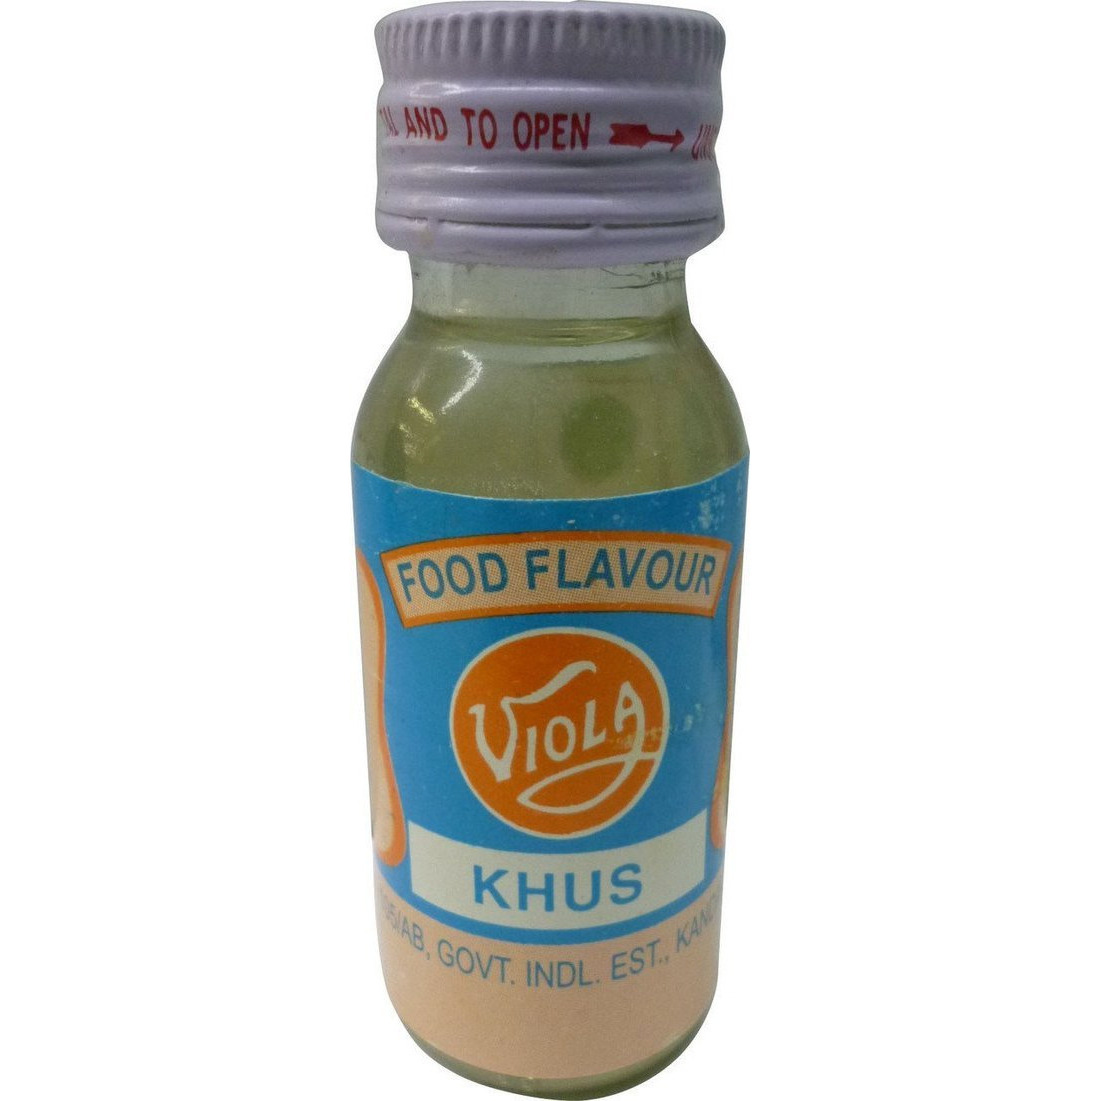 Pack of 4 - Viola Food Flavor Essence Khus - 25 Ml (0.67 Oz)